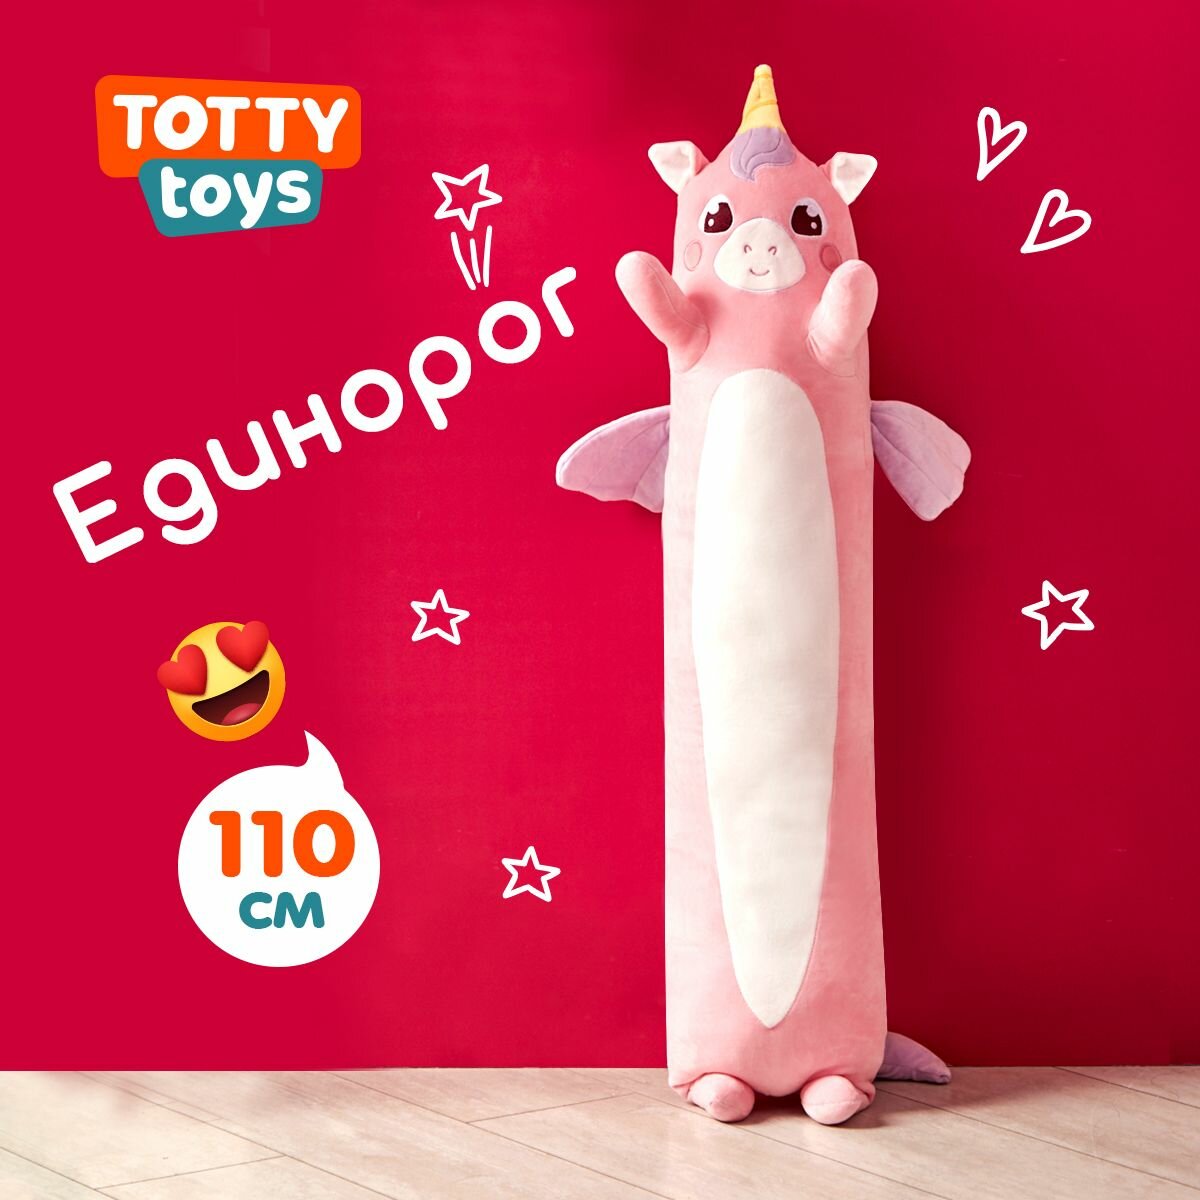 Мягкая игрушка Totty toys Единорог-батон, 110 см, розовый